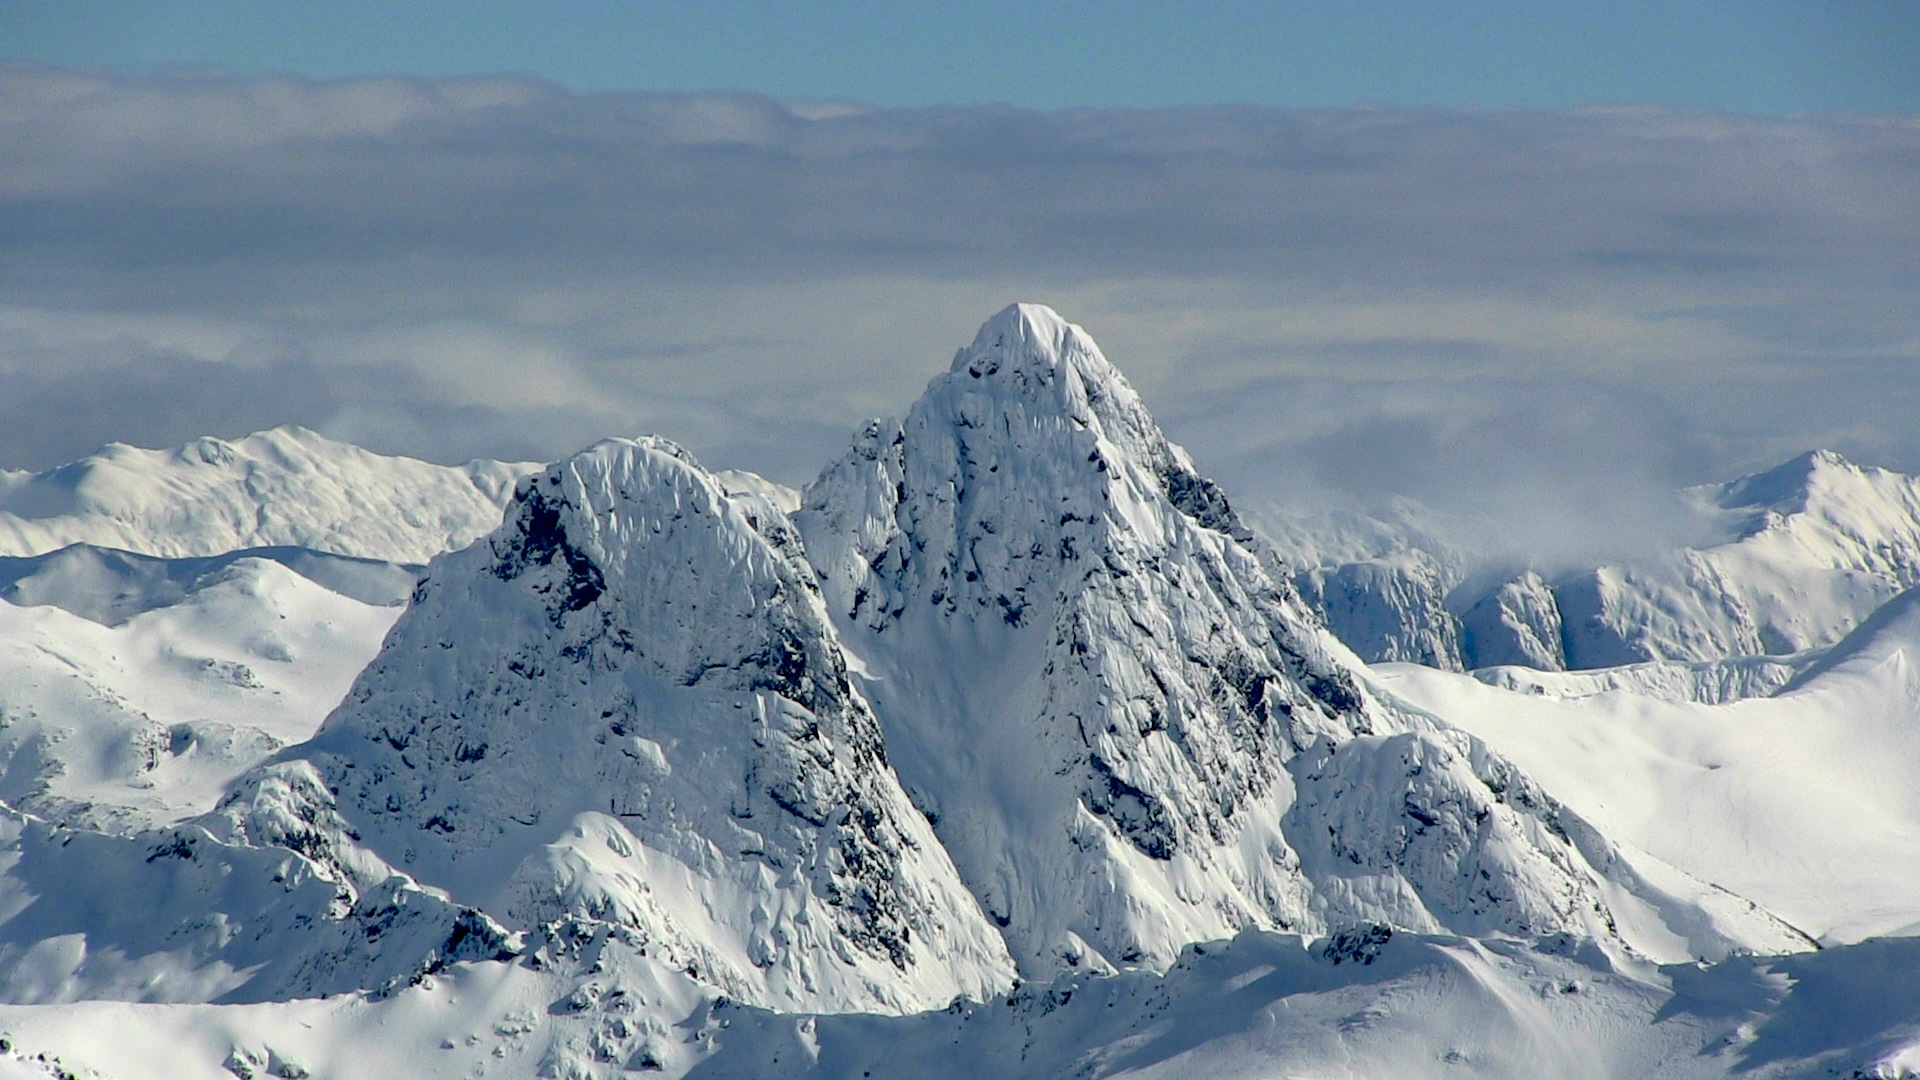 Cerro Negro. Bariloche, Argentina. August, 2014. photo: snowbrains.com